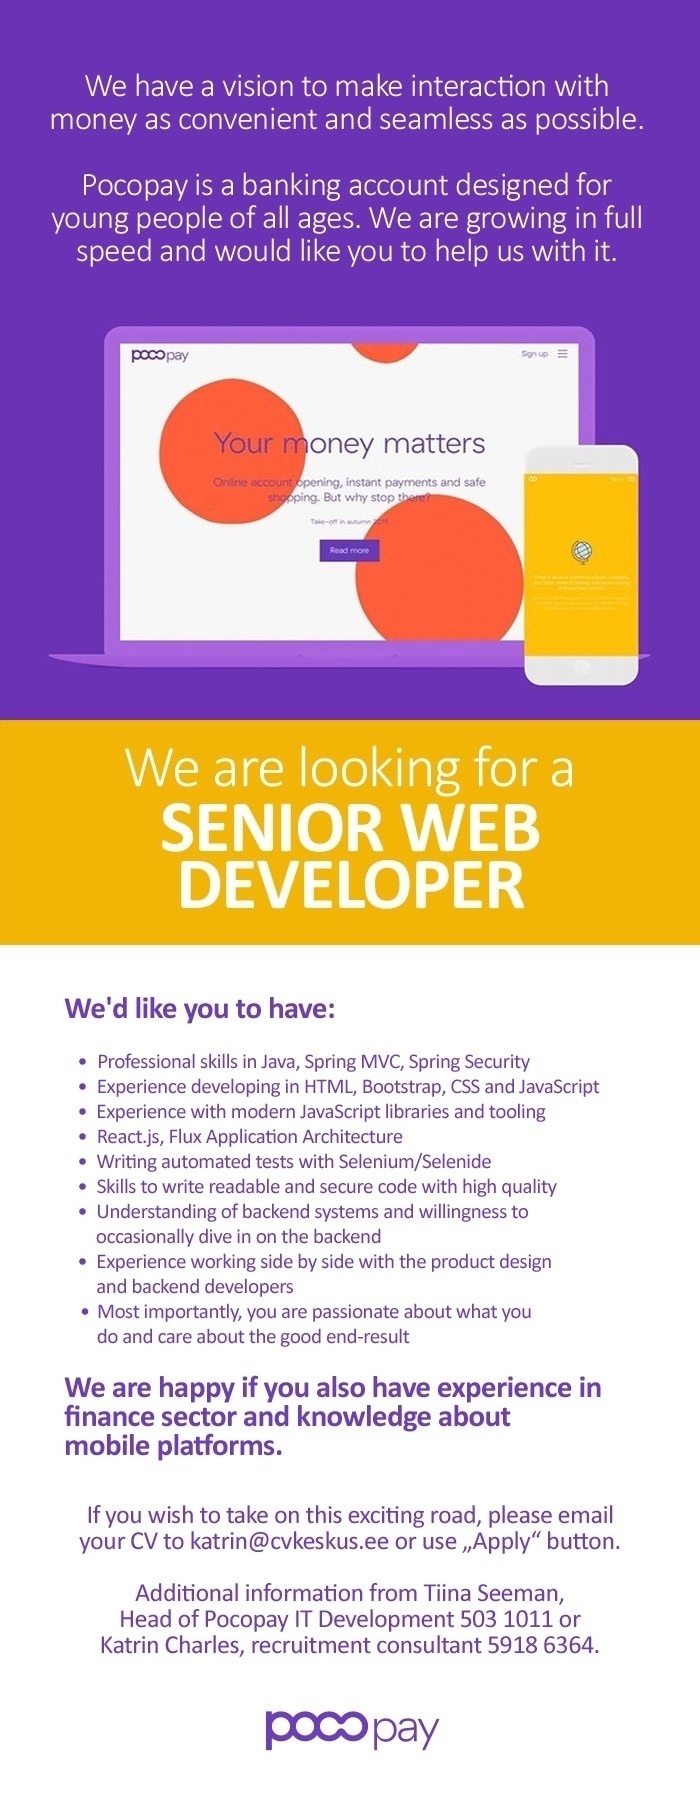 CV KESKUS OÜ Pocopay is looking for a Senior Web Developer!